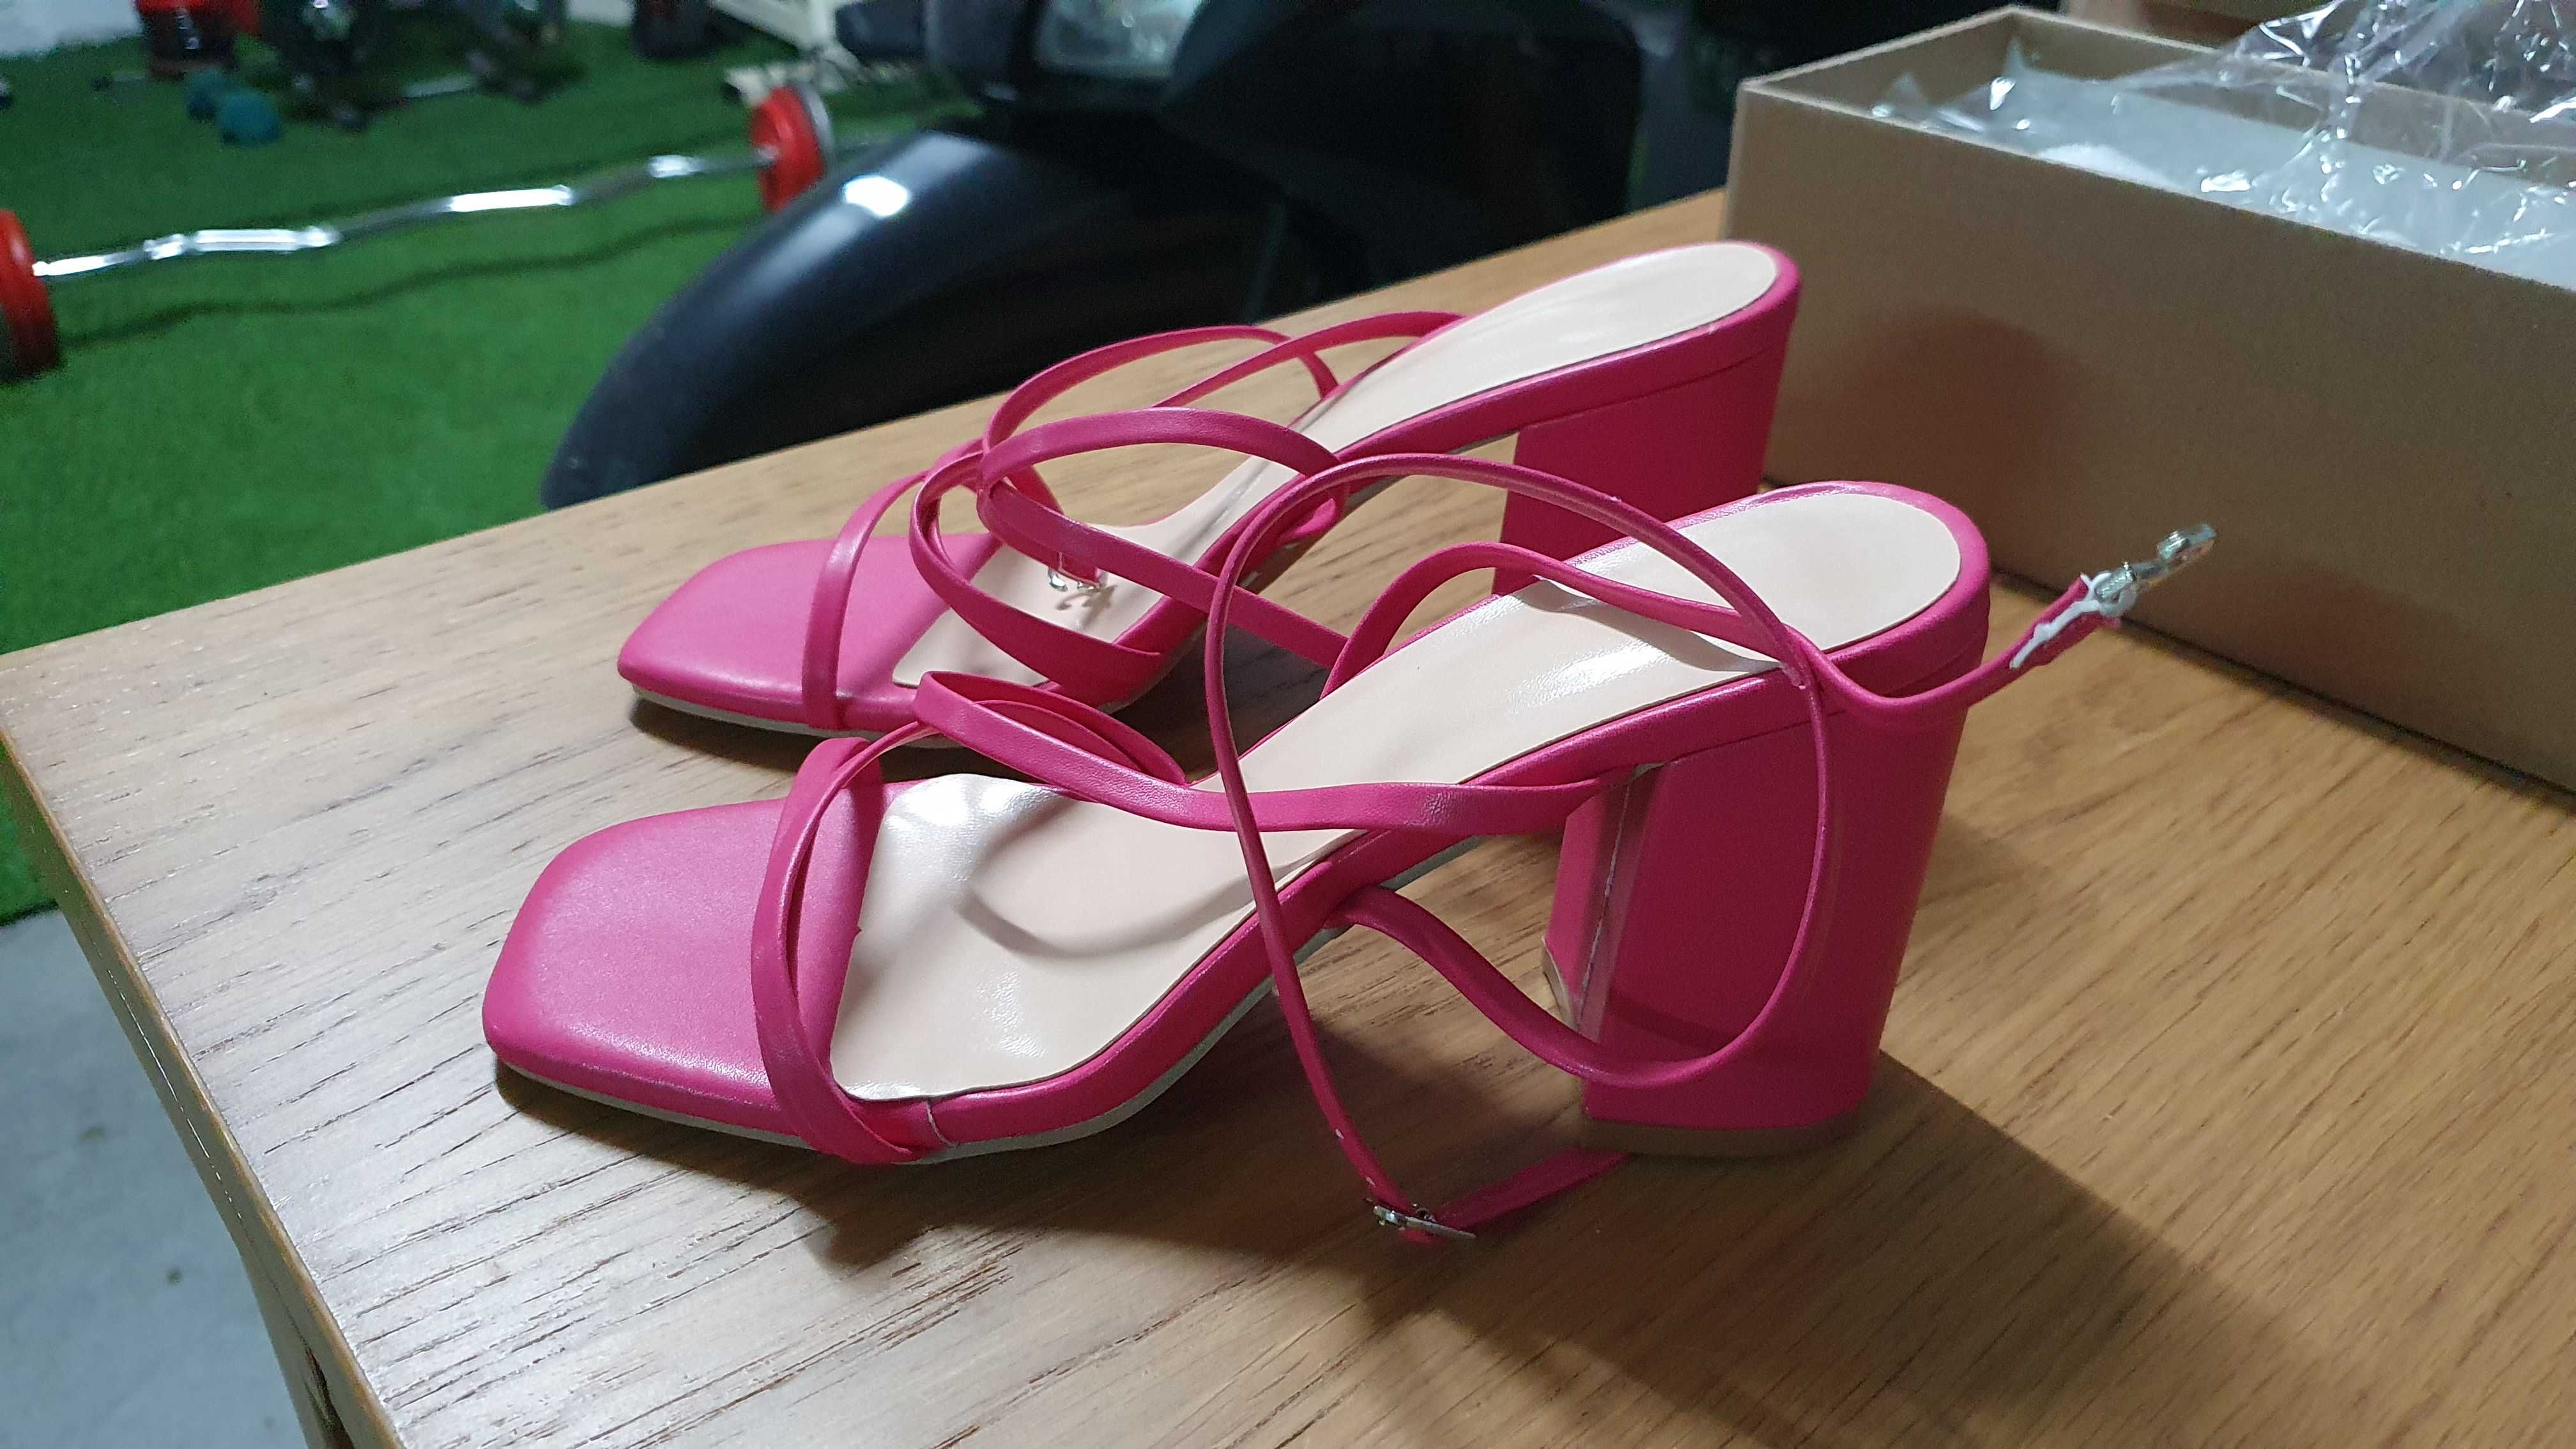 Sapatos Senhora SHEIN cor de rosa tam. 36 e 38 novos